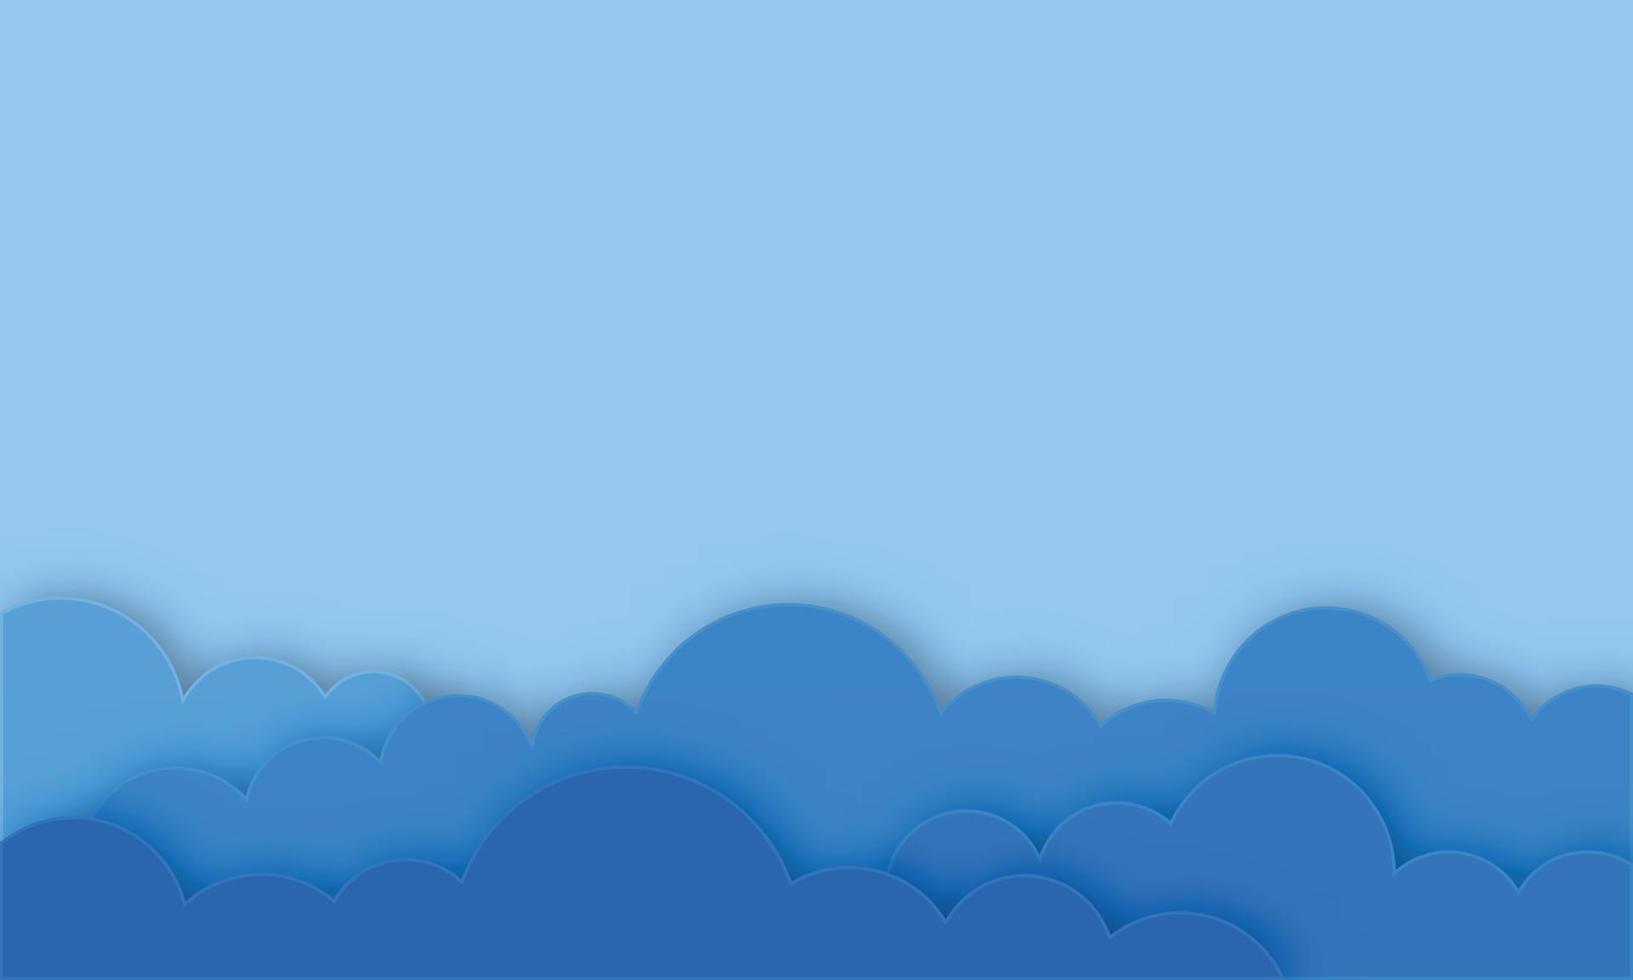 nuvens no céu azul. banner com copyspace. estilo de corte de papel. vetor